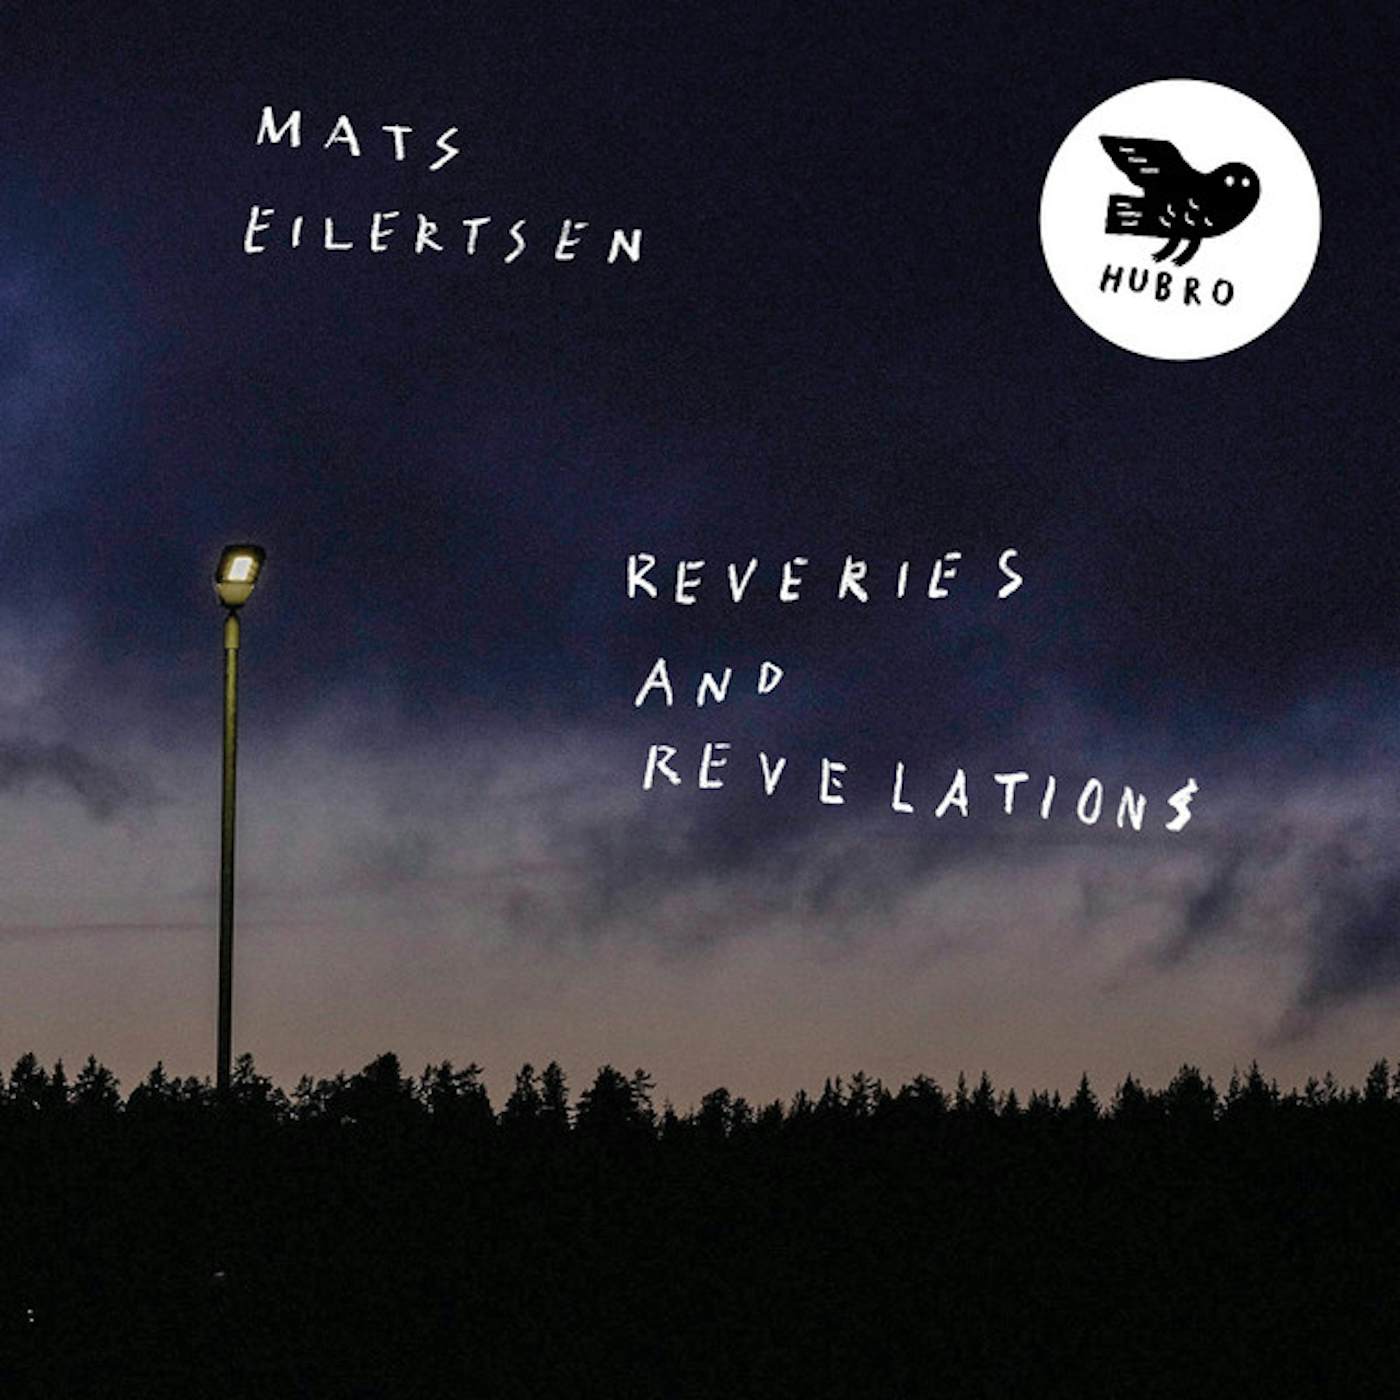 Mats Eilertsen REVERIES & REVELATIONS CD